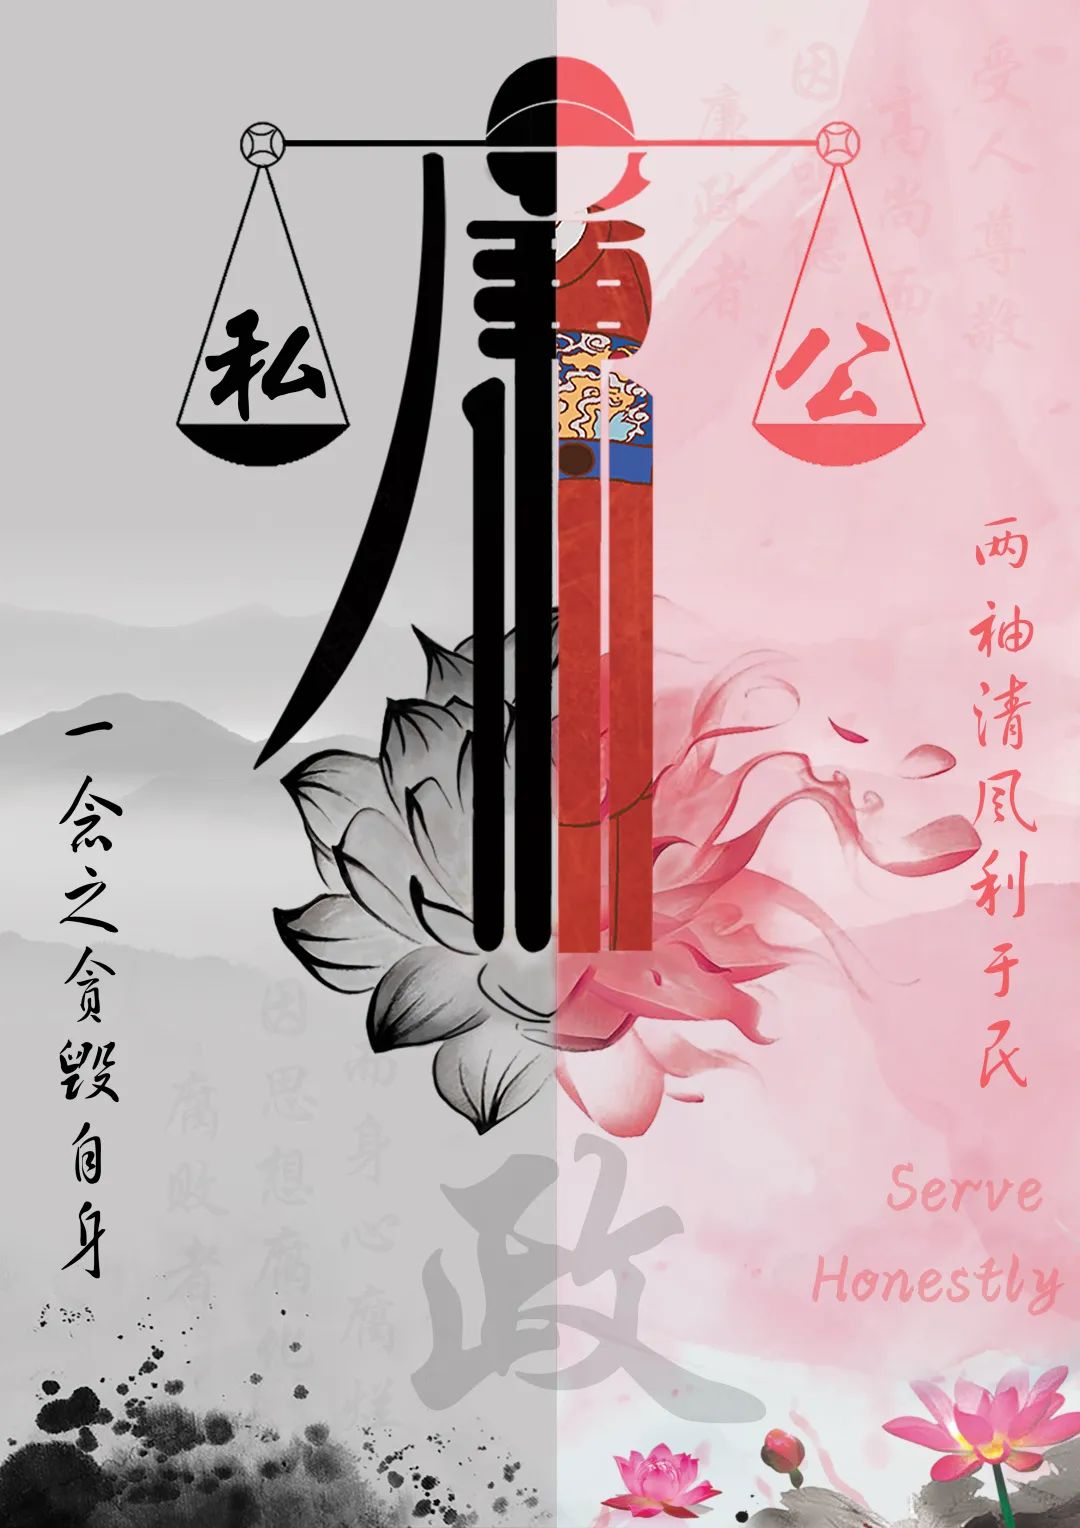 华东理工大学 ● 作品介绍:海报分为两半,红色一半代表公正廉洁,灰色